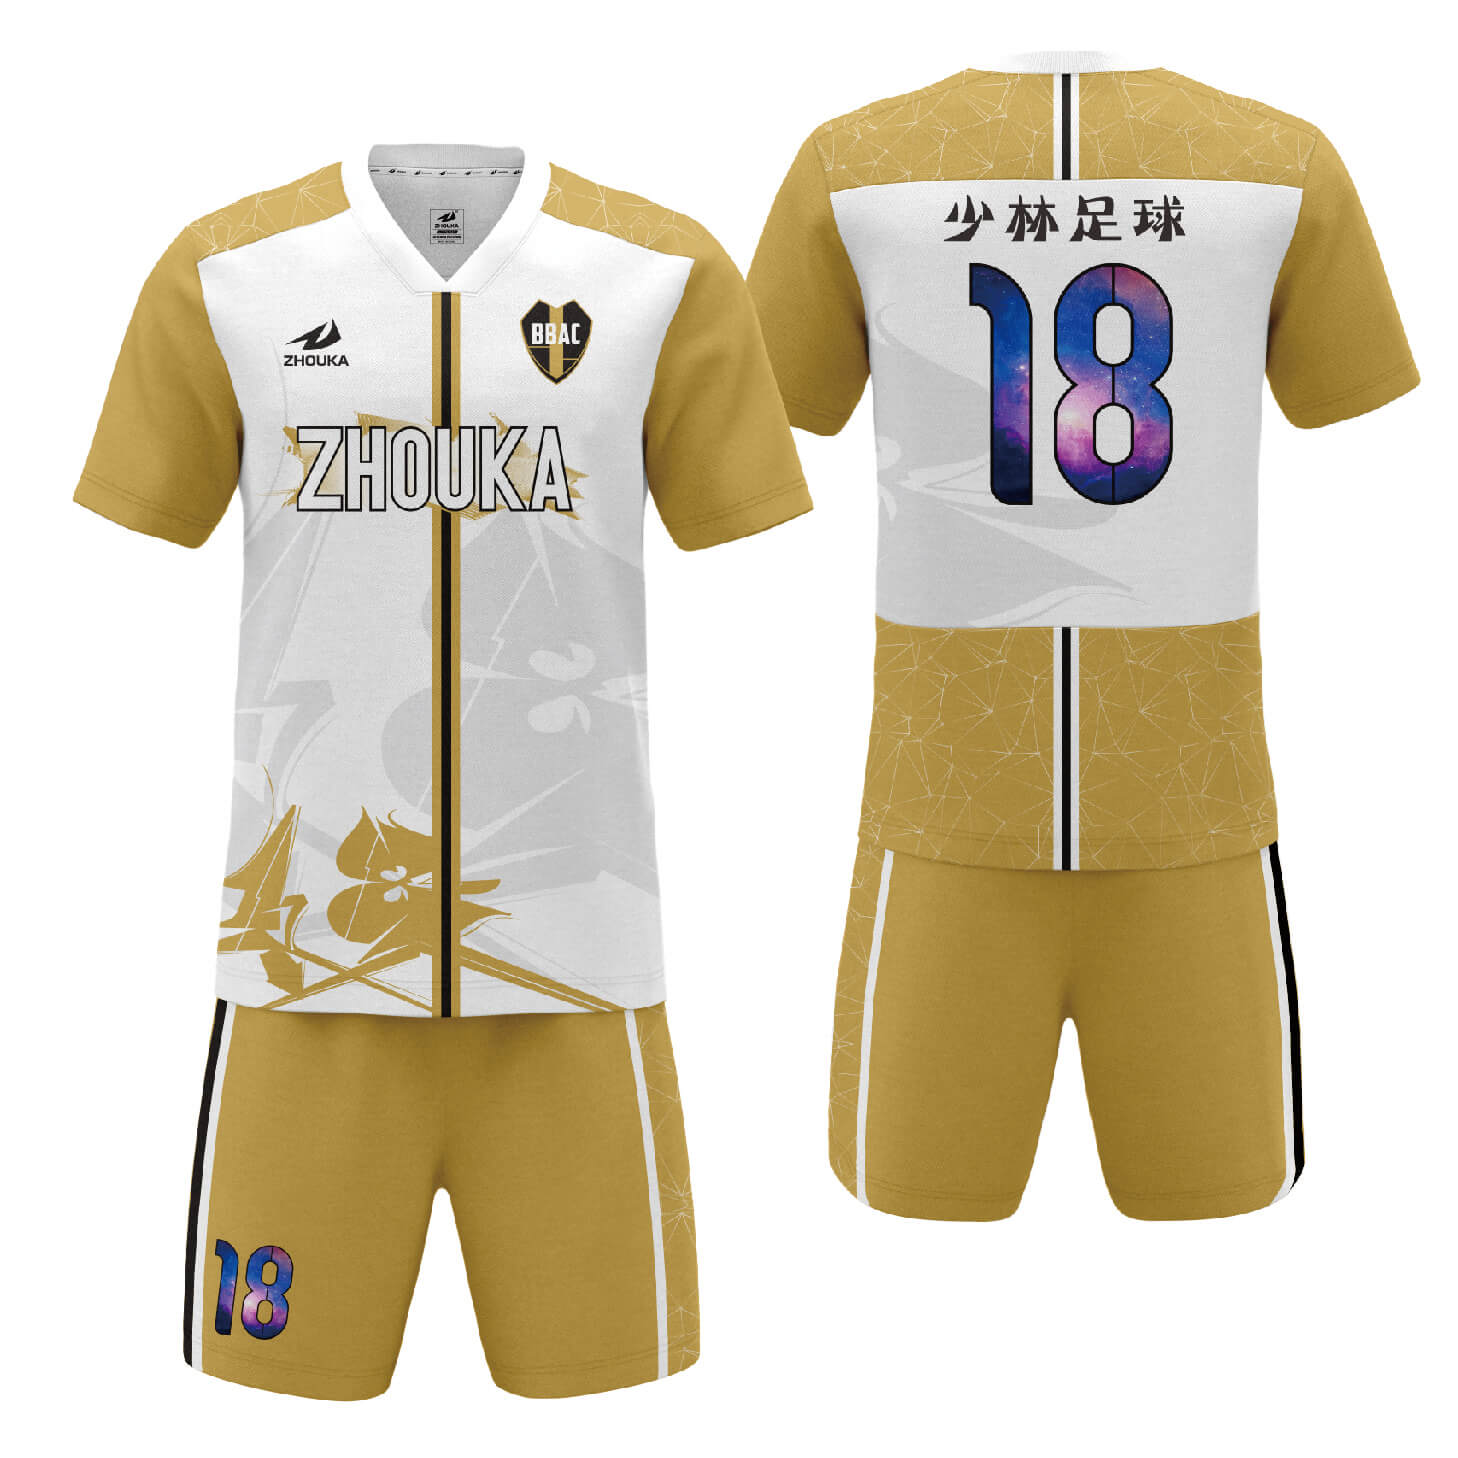 足球球衣设计完全升华设计团队或俱乐部的足球服